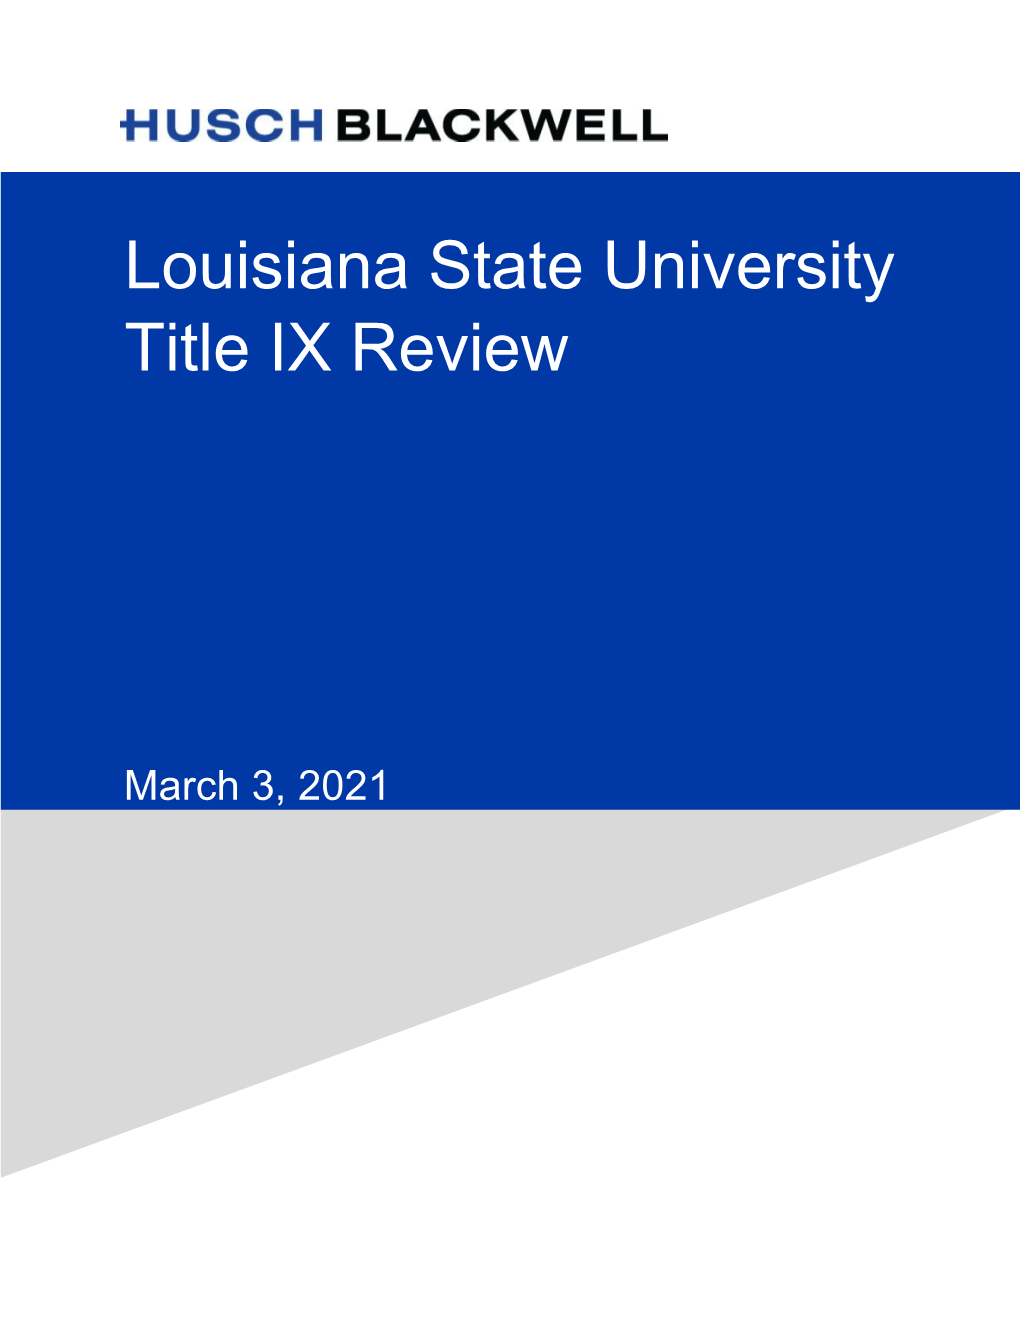 Louisiana State University Title IX Review